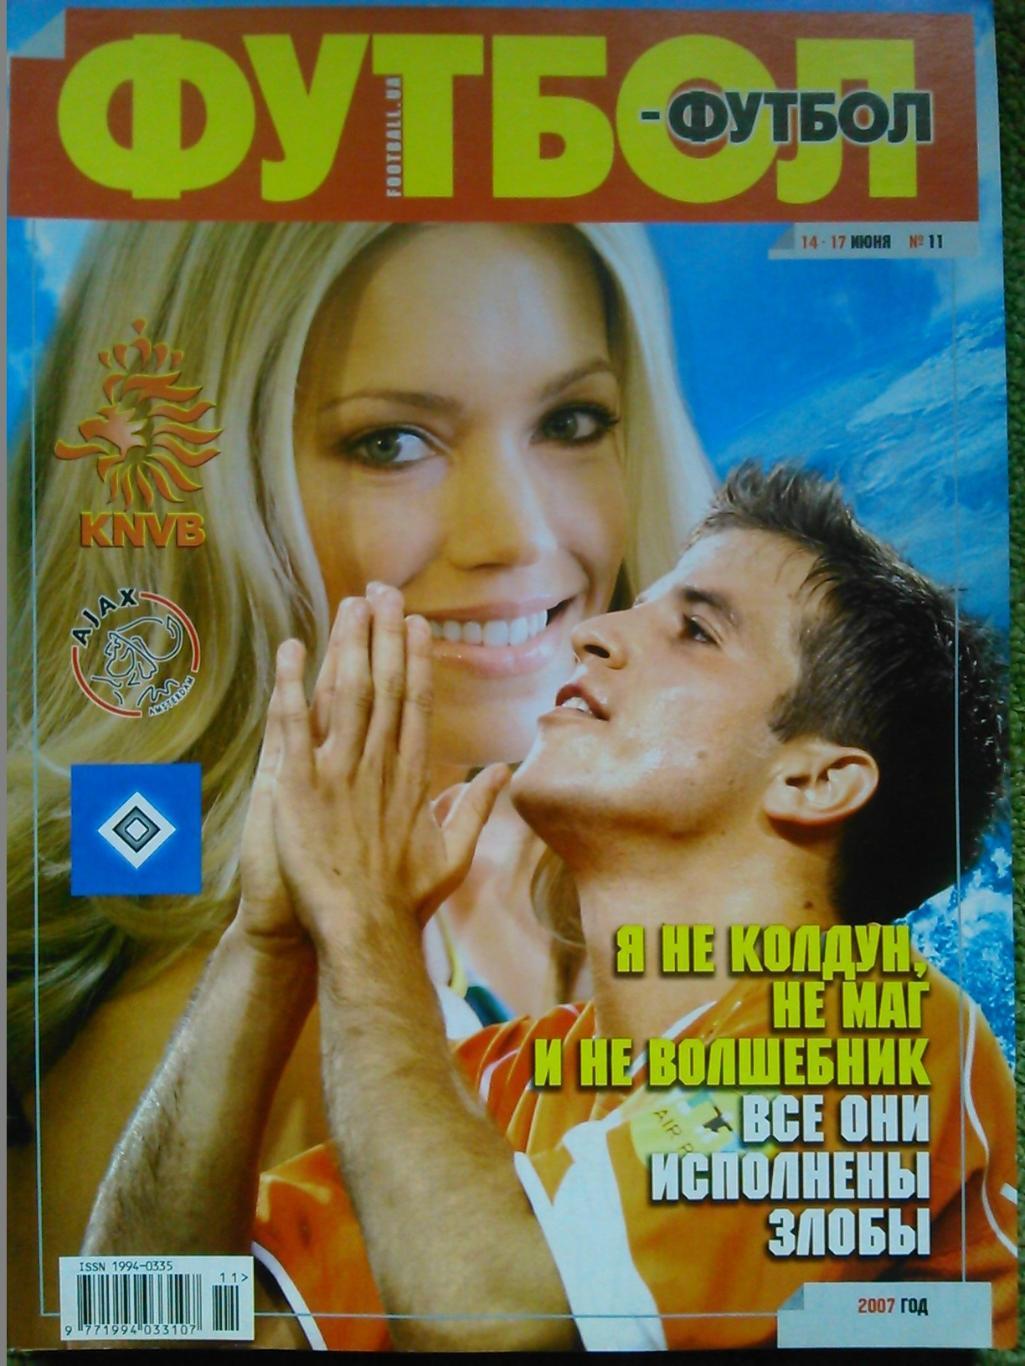 ФУТБОЛ-Футбол.(Украина.) №11.2007.Постер-Ювентус. Оптом скидки до 45%!.